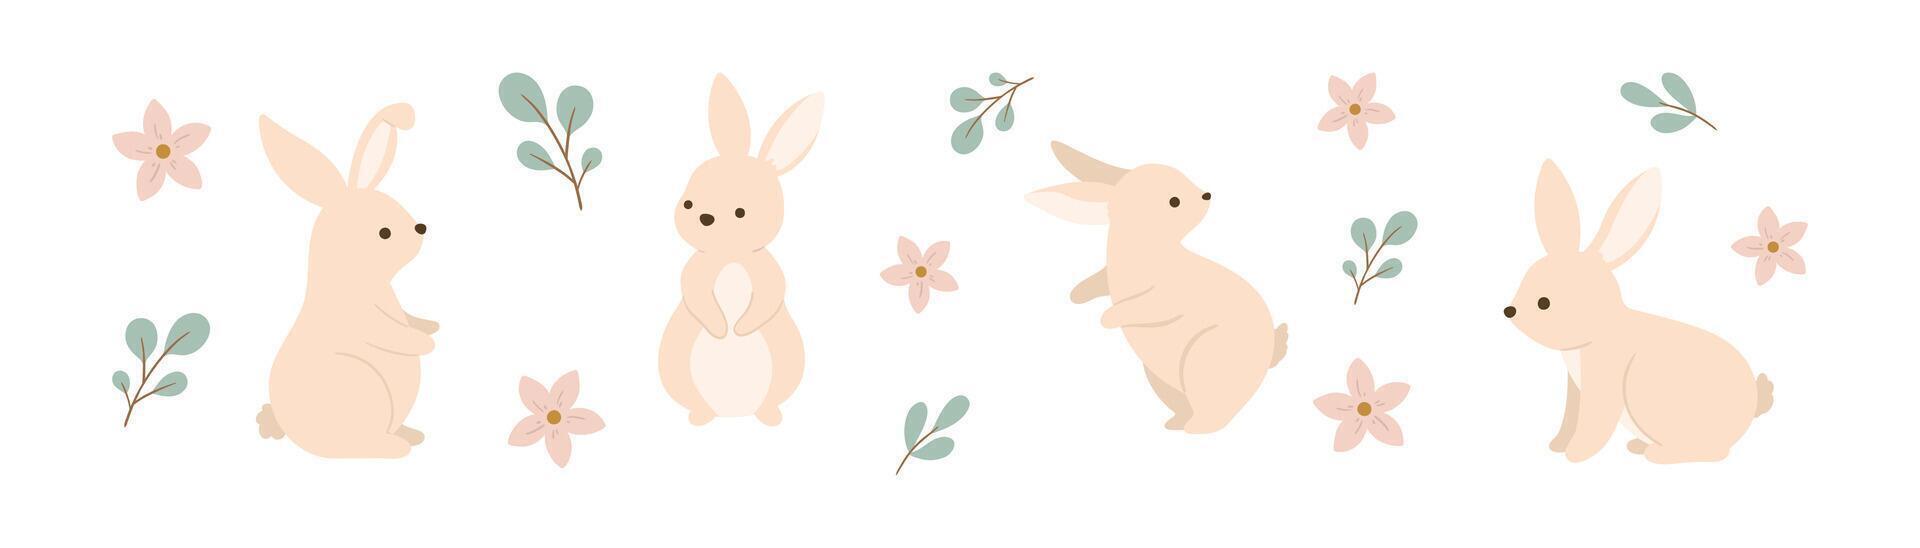 Pasqua coniglietto impostato con fiori e le foglie vettore